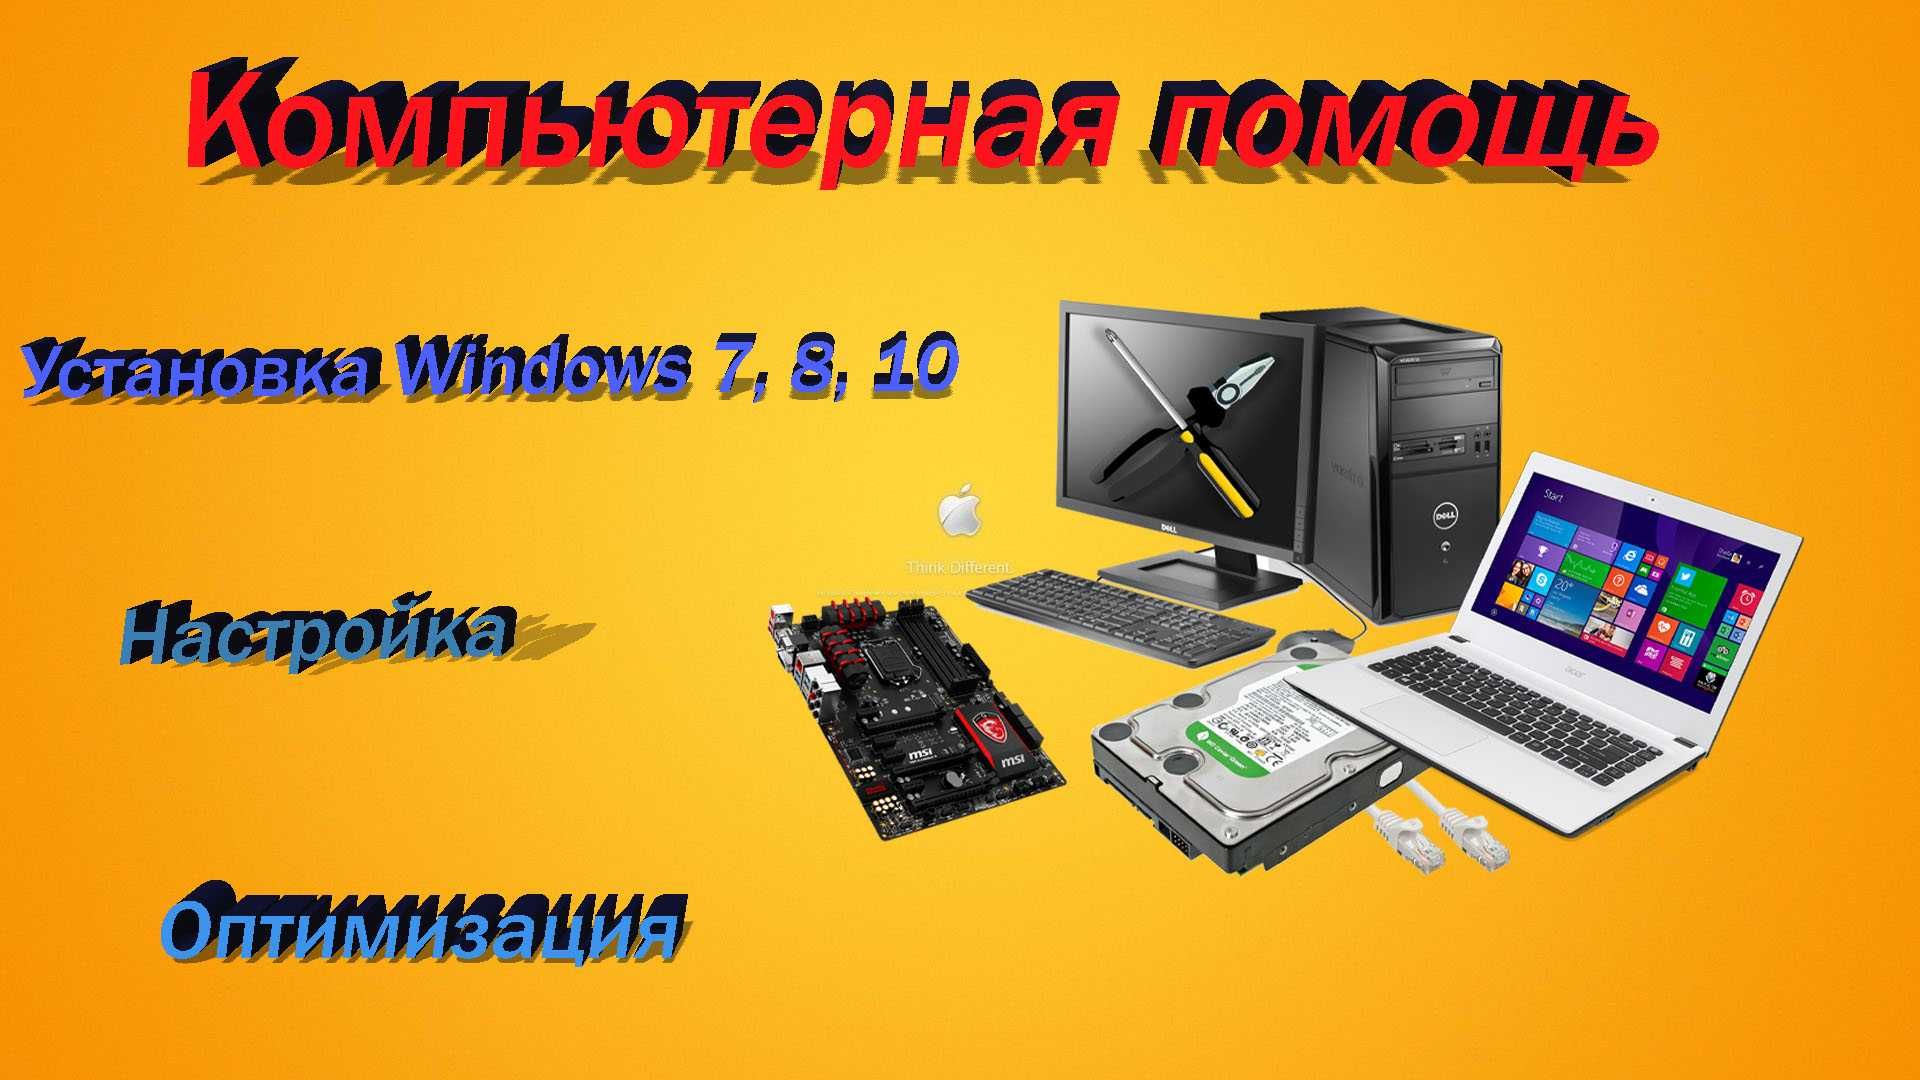 Ремонт и настройка компьютеров. Windows 7,8,10 òrnatish